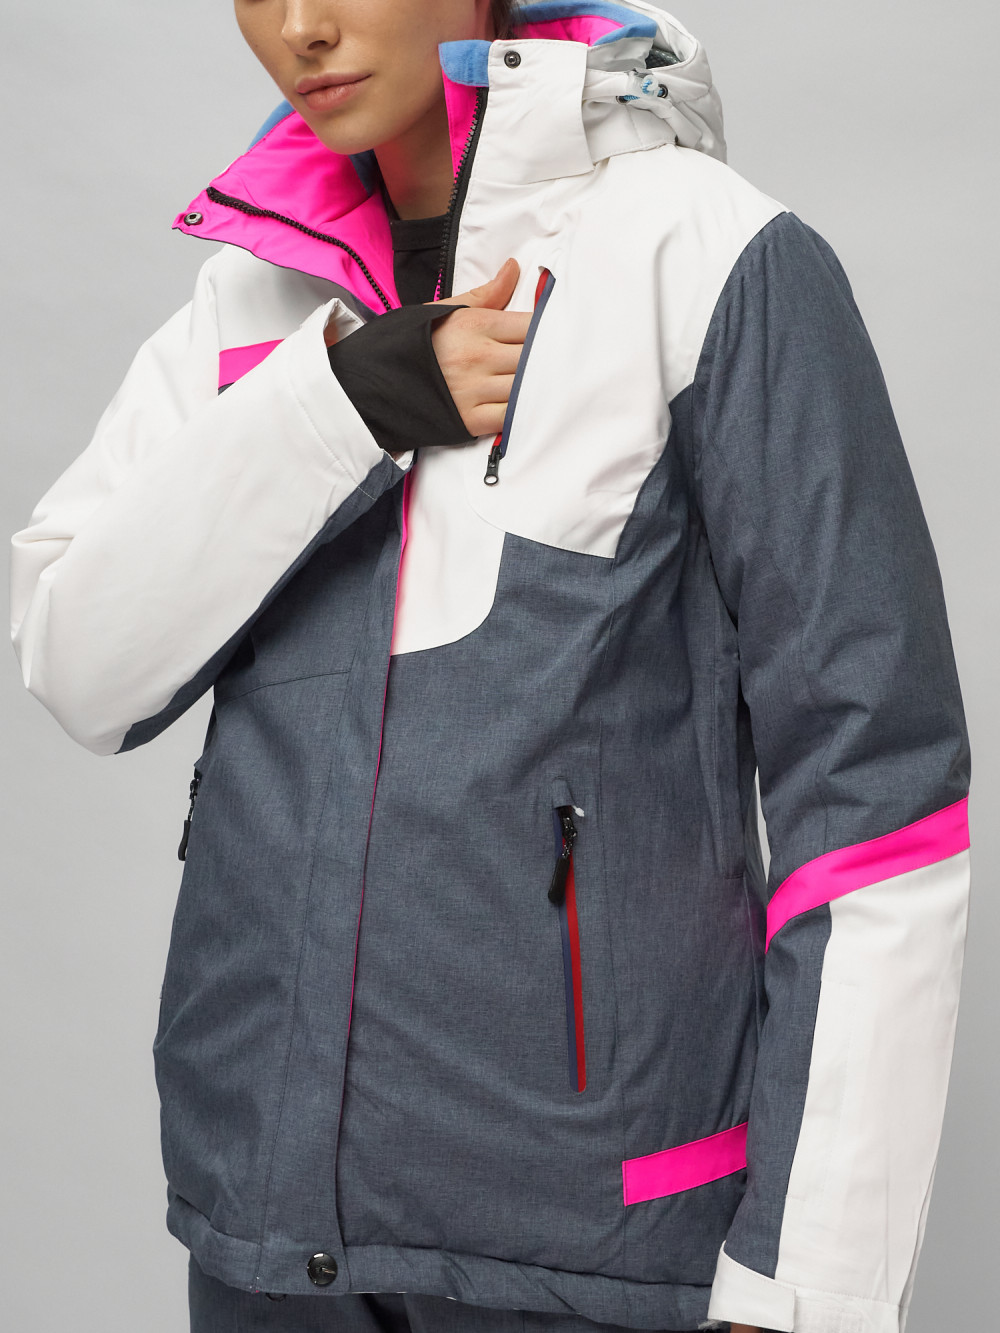 Купить горнолыжный костюм женский оптом от производителя недорого в Москве 02282Bl 1